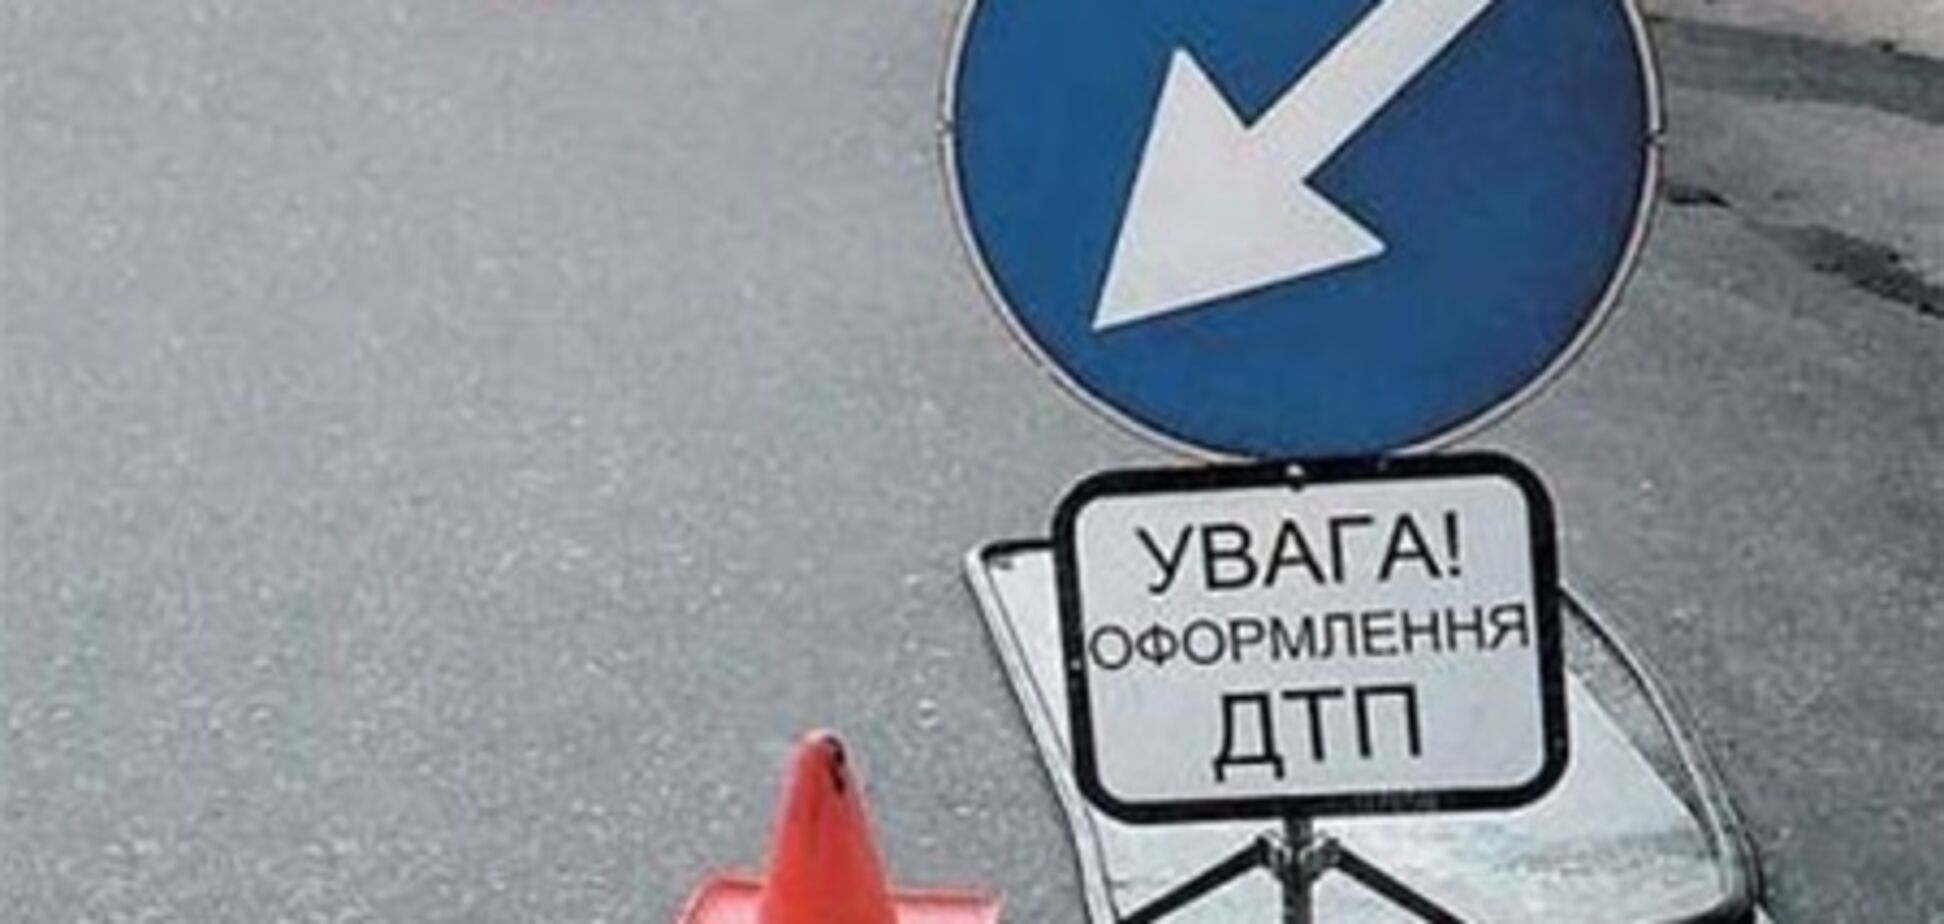 В Симферополе водитель автобуса за рулем потерял сознание: погибли люди